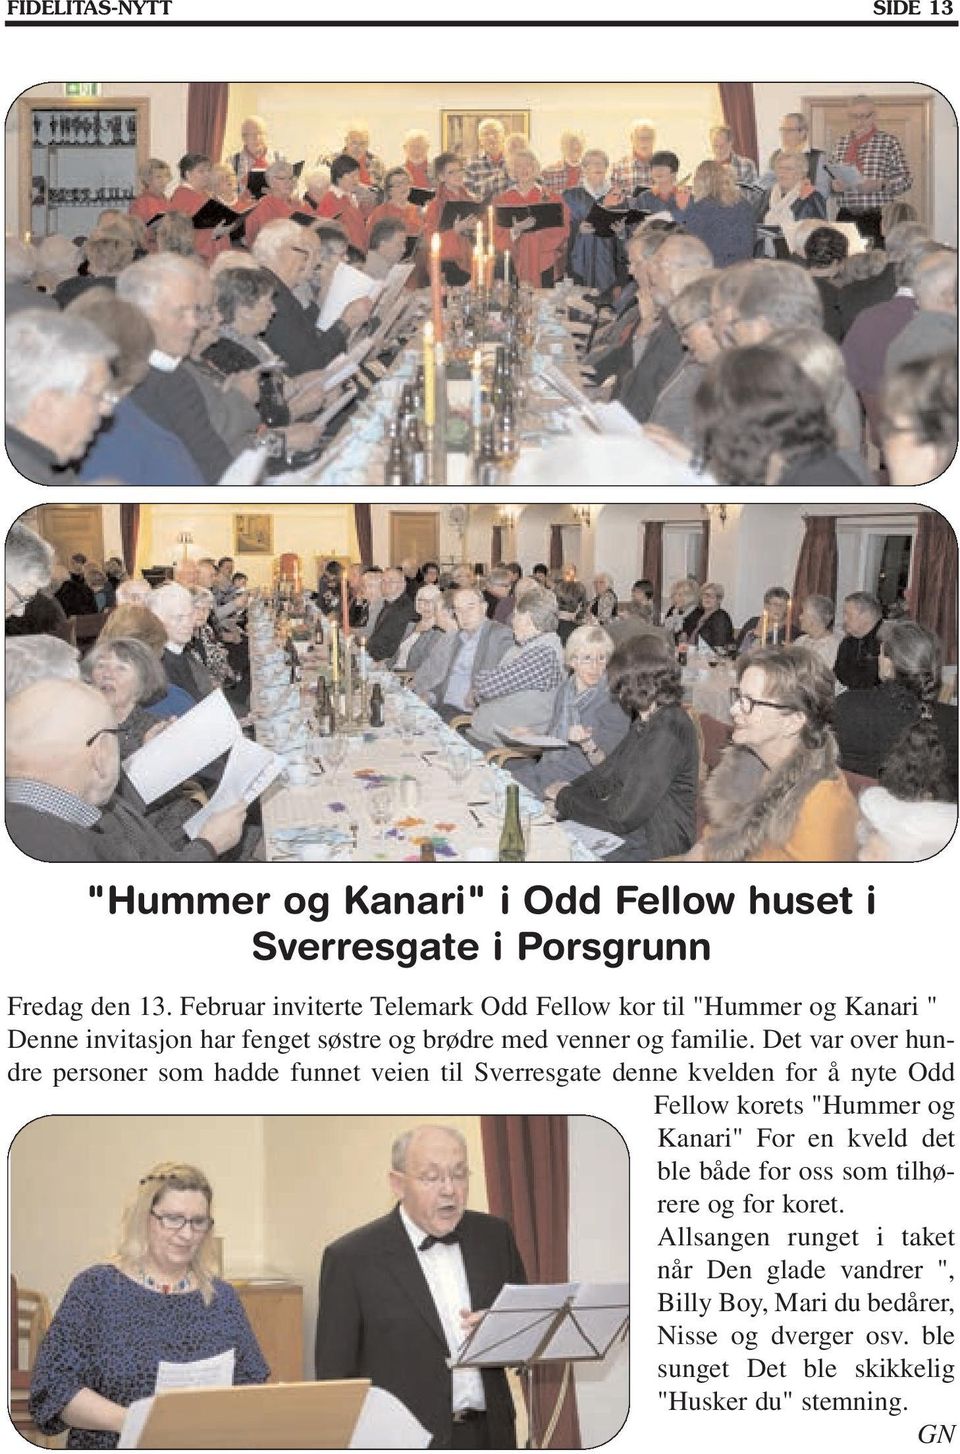 Det var over hundre personer som hadde funnet veien til Sverresgate denne kvelden for å nyte Odd Fellow korets "Hummer og Kanari" For en kveld